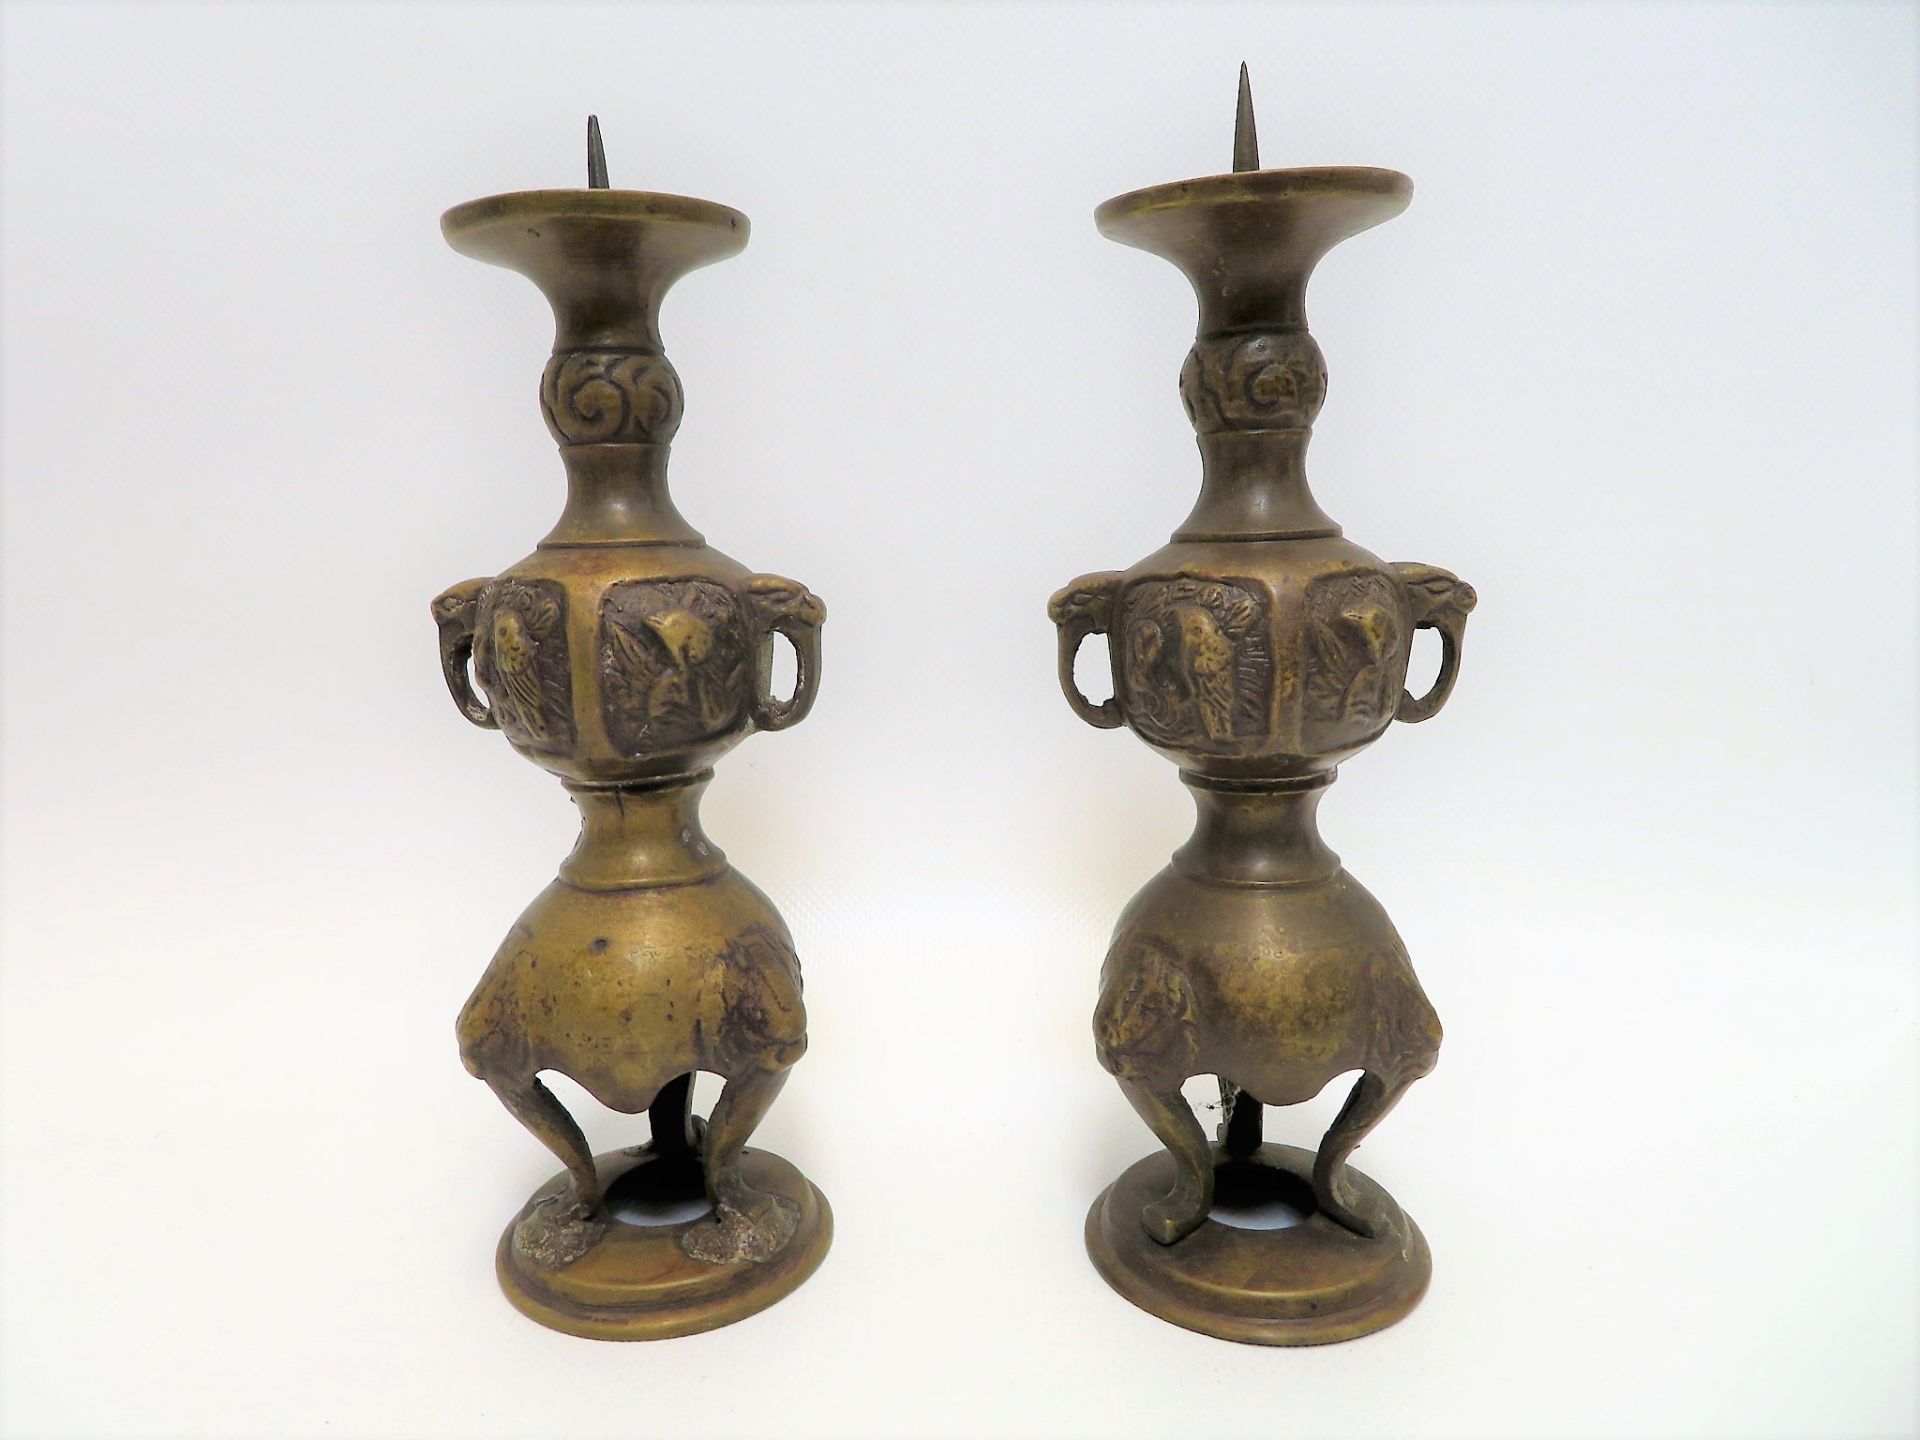 Paar Kerzenleuchter, China, um 1900, Bronze, h 19 cm, d 7 cm.